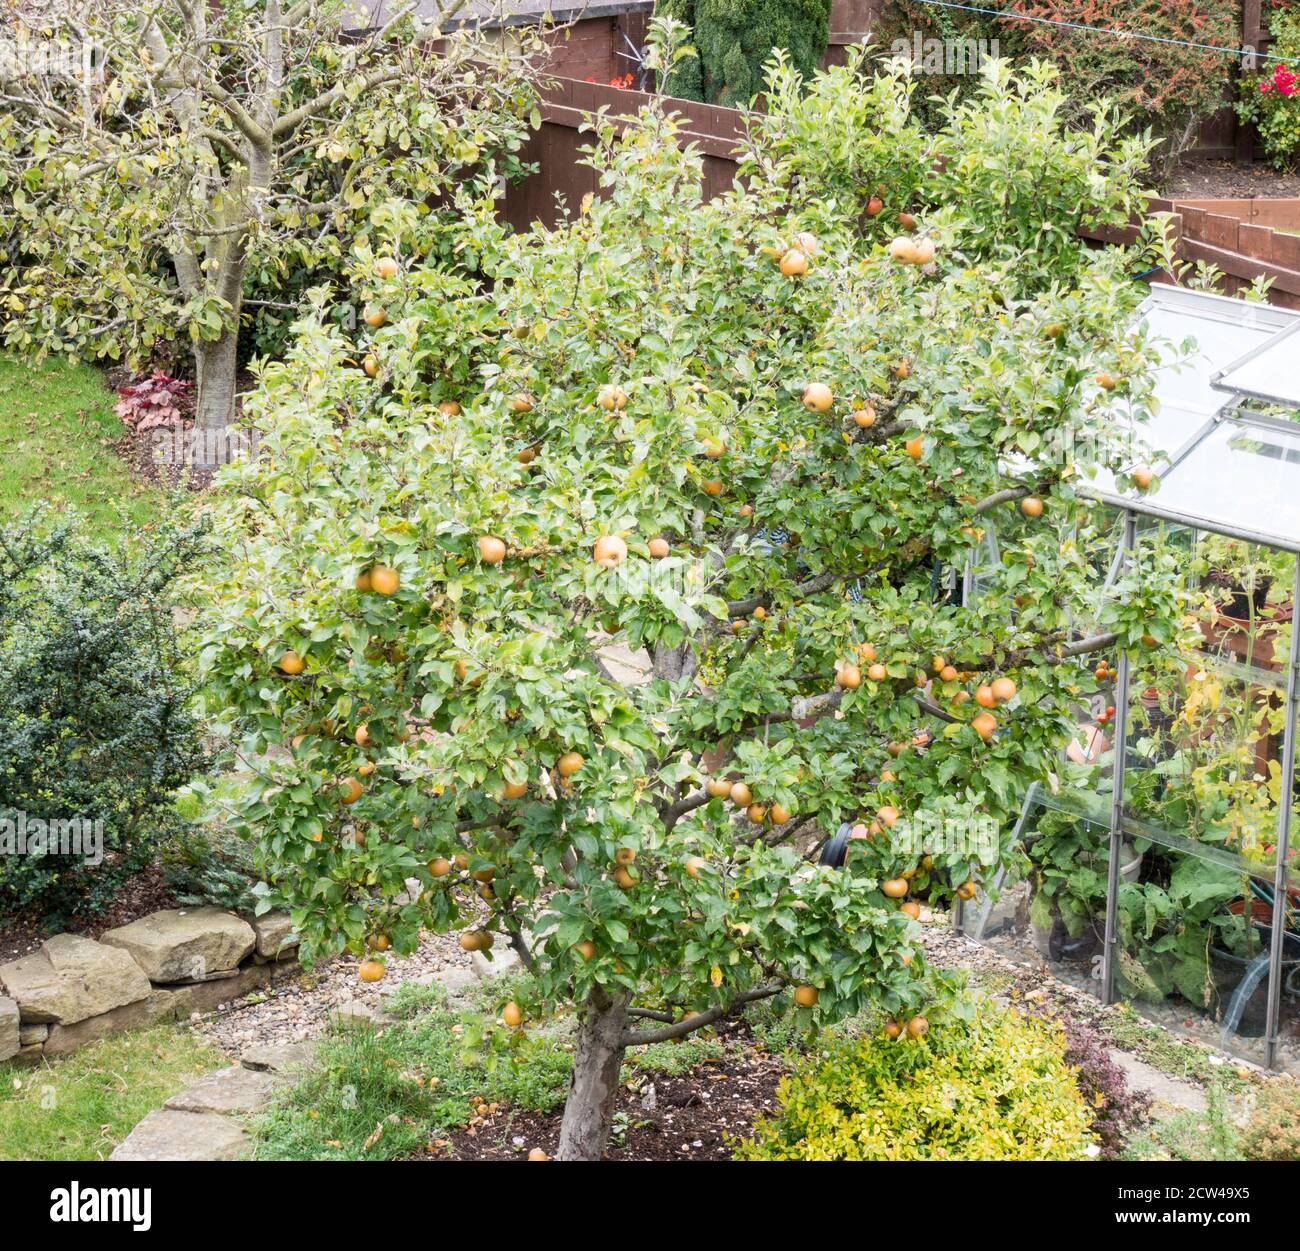 Egremont Russet Apfelbaum (Malus domestica) Frucht in einem Vorstadtgarten, England Großbritannien Stockfoto